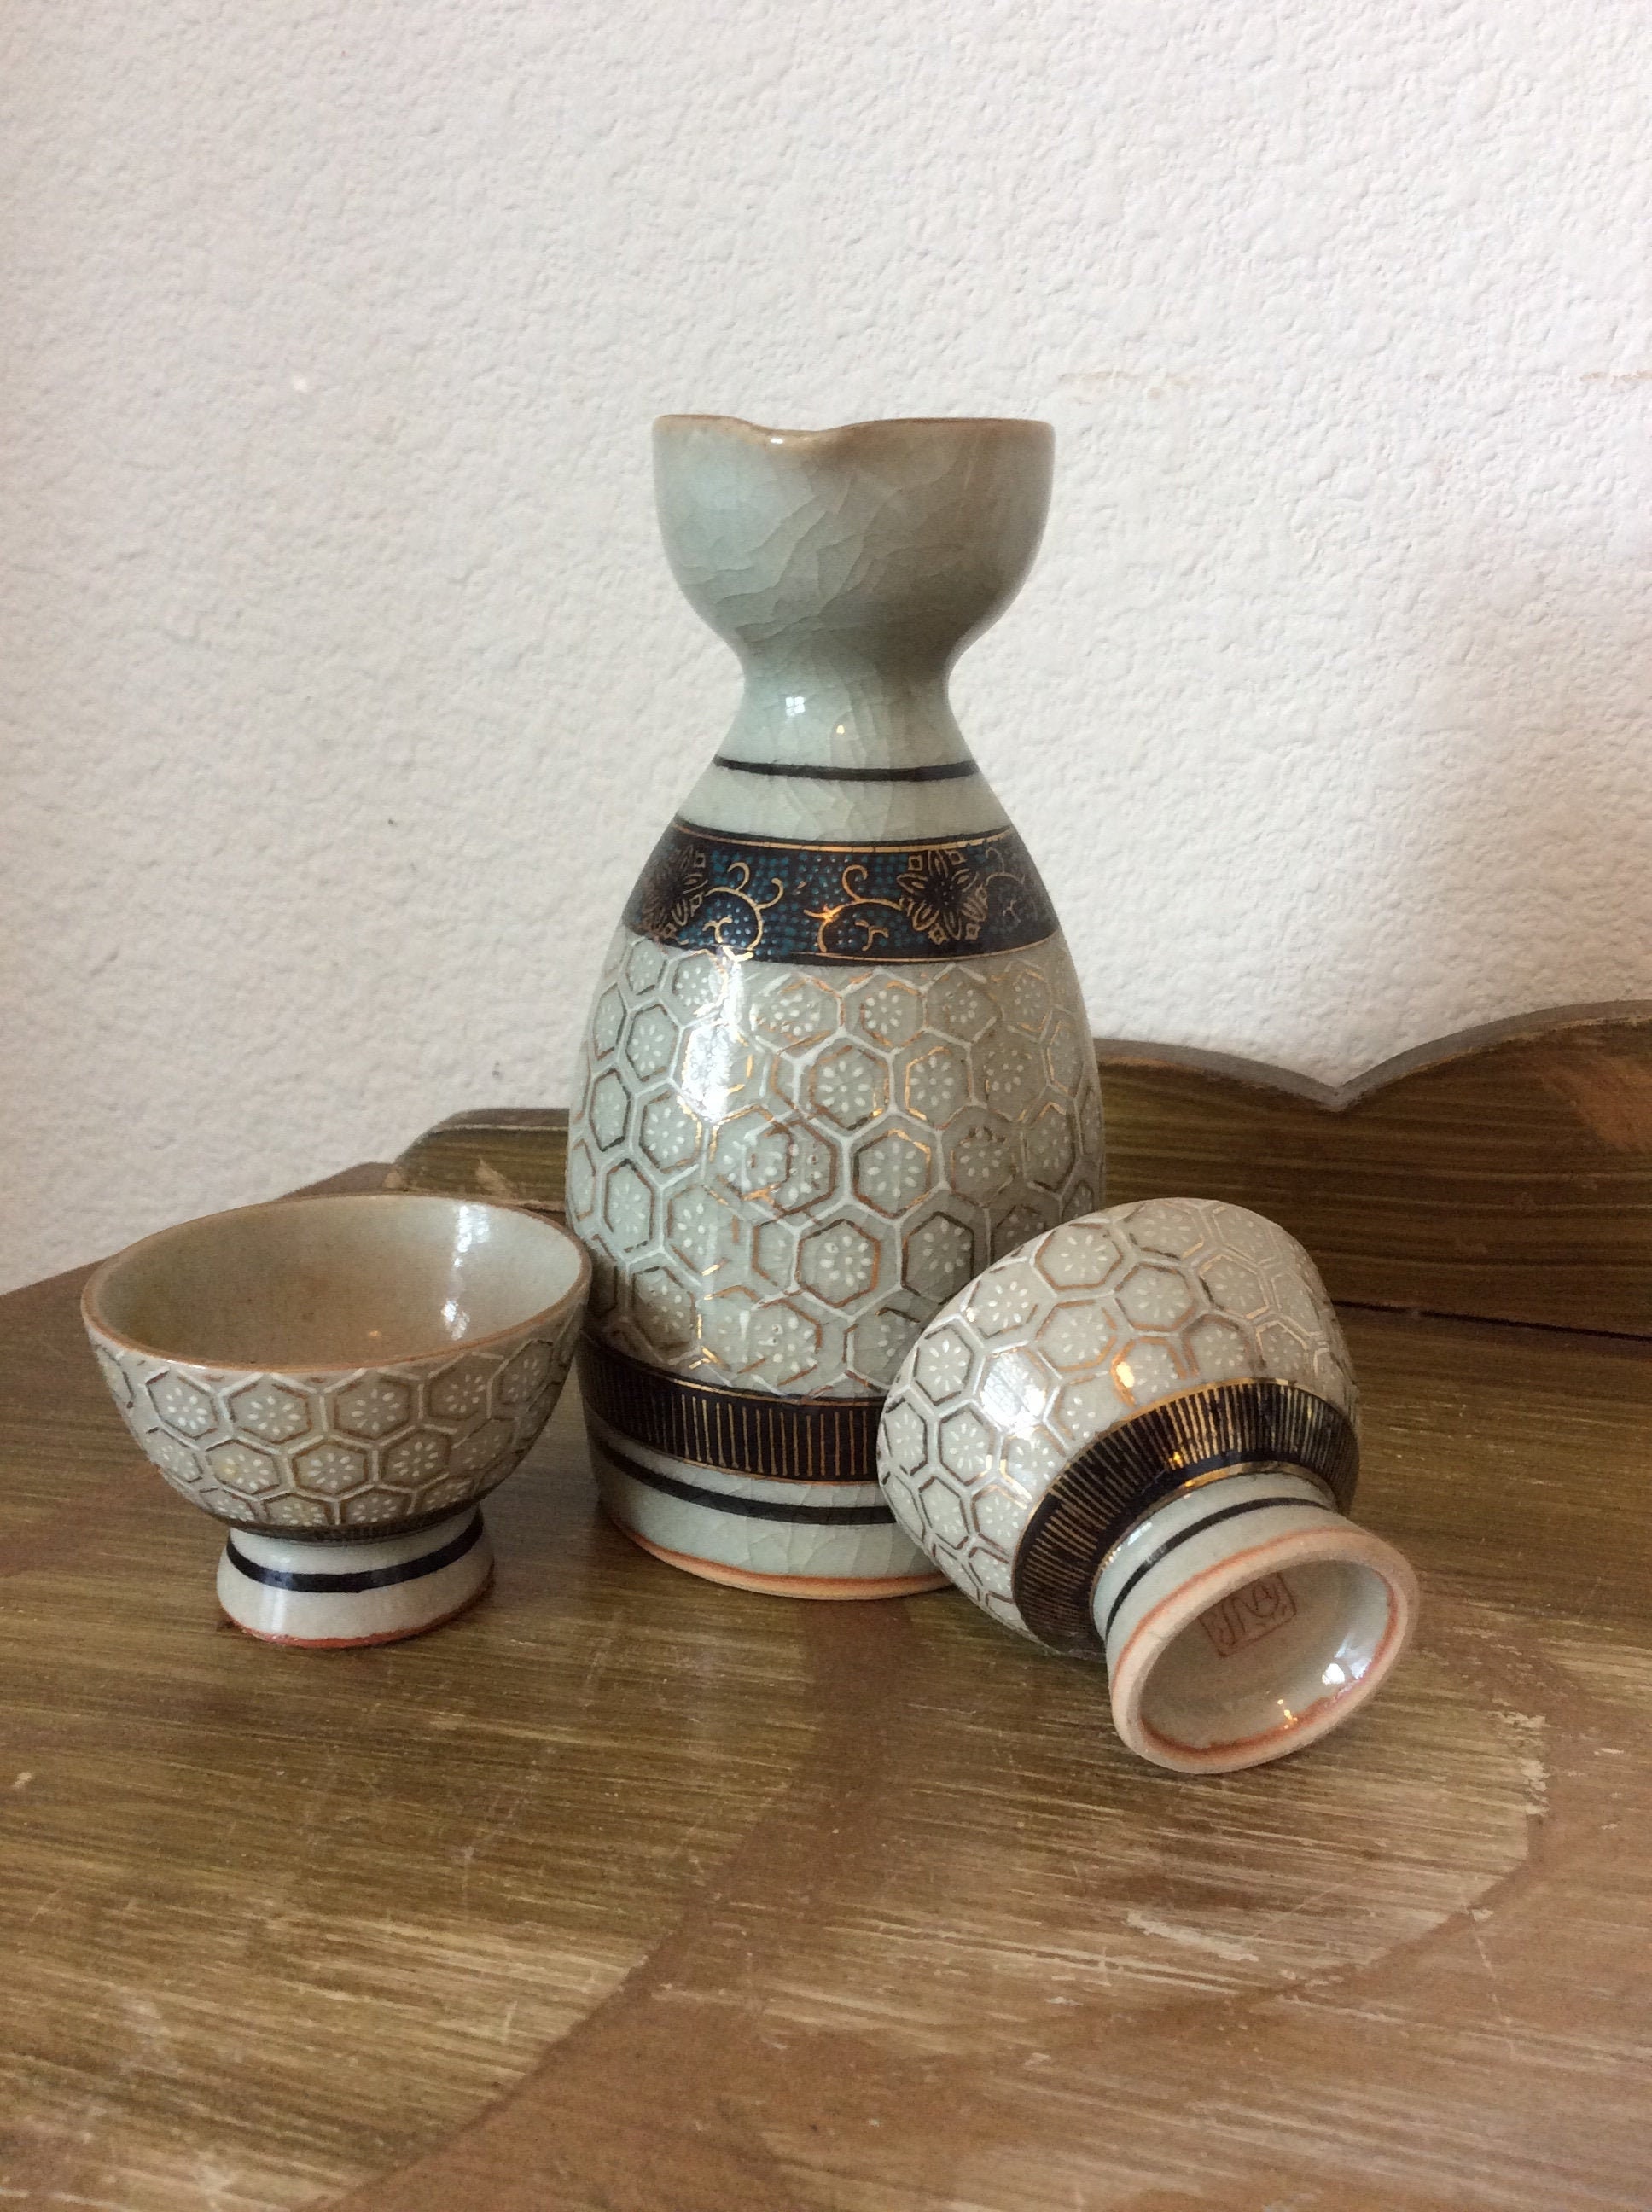 Buy BOLLAER Sake Pot Set, Japanese Cold Sake Glasses, Clear Unique